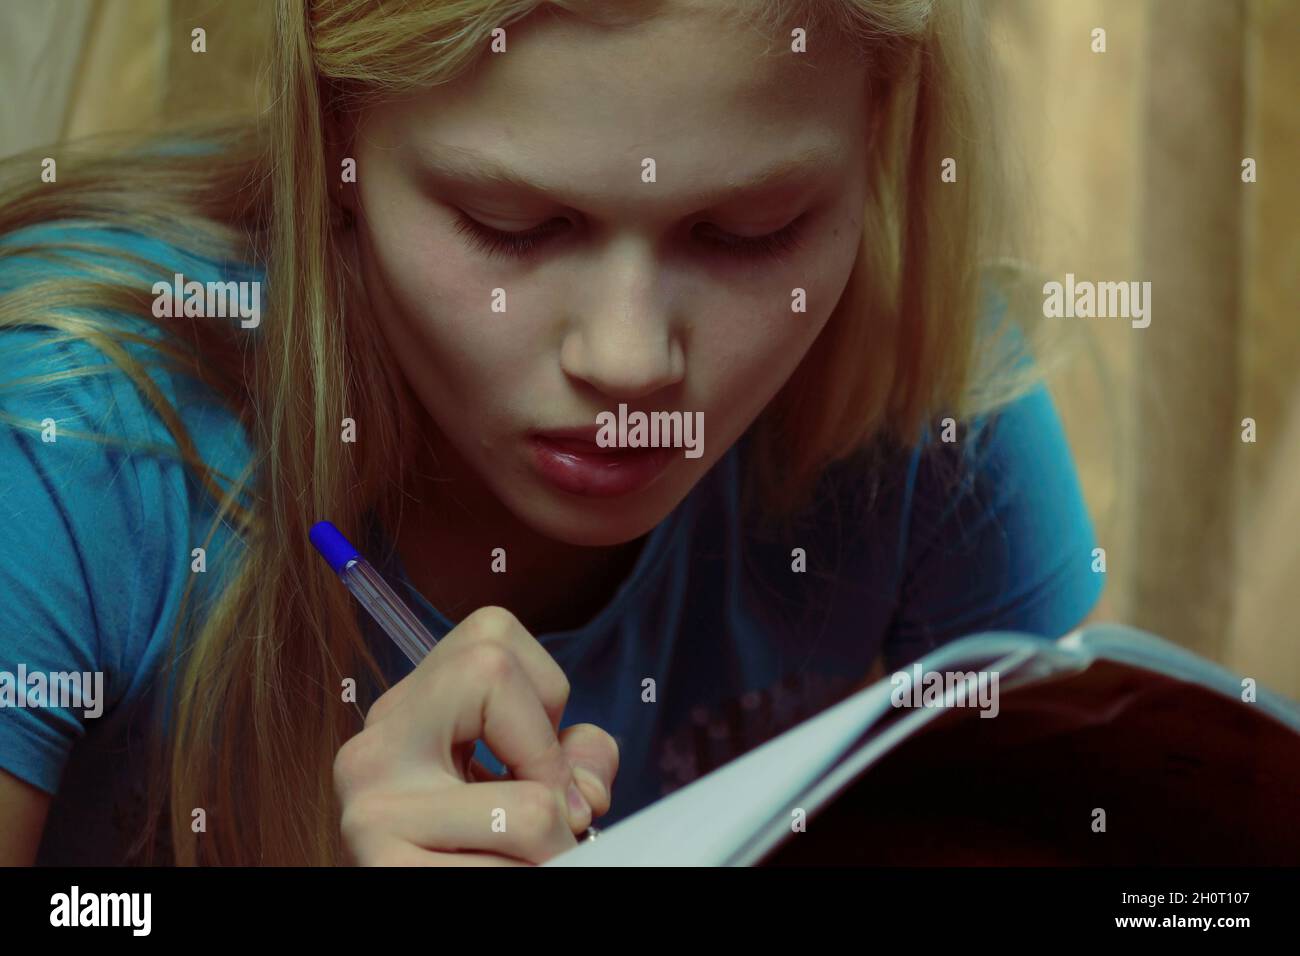 Una joven adolescente rubia está ocupada escribiendo en un cuaderno en el interior. Foto de stock